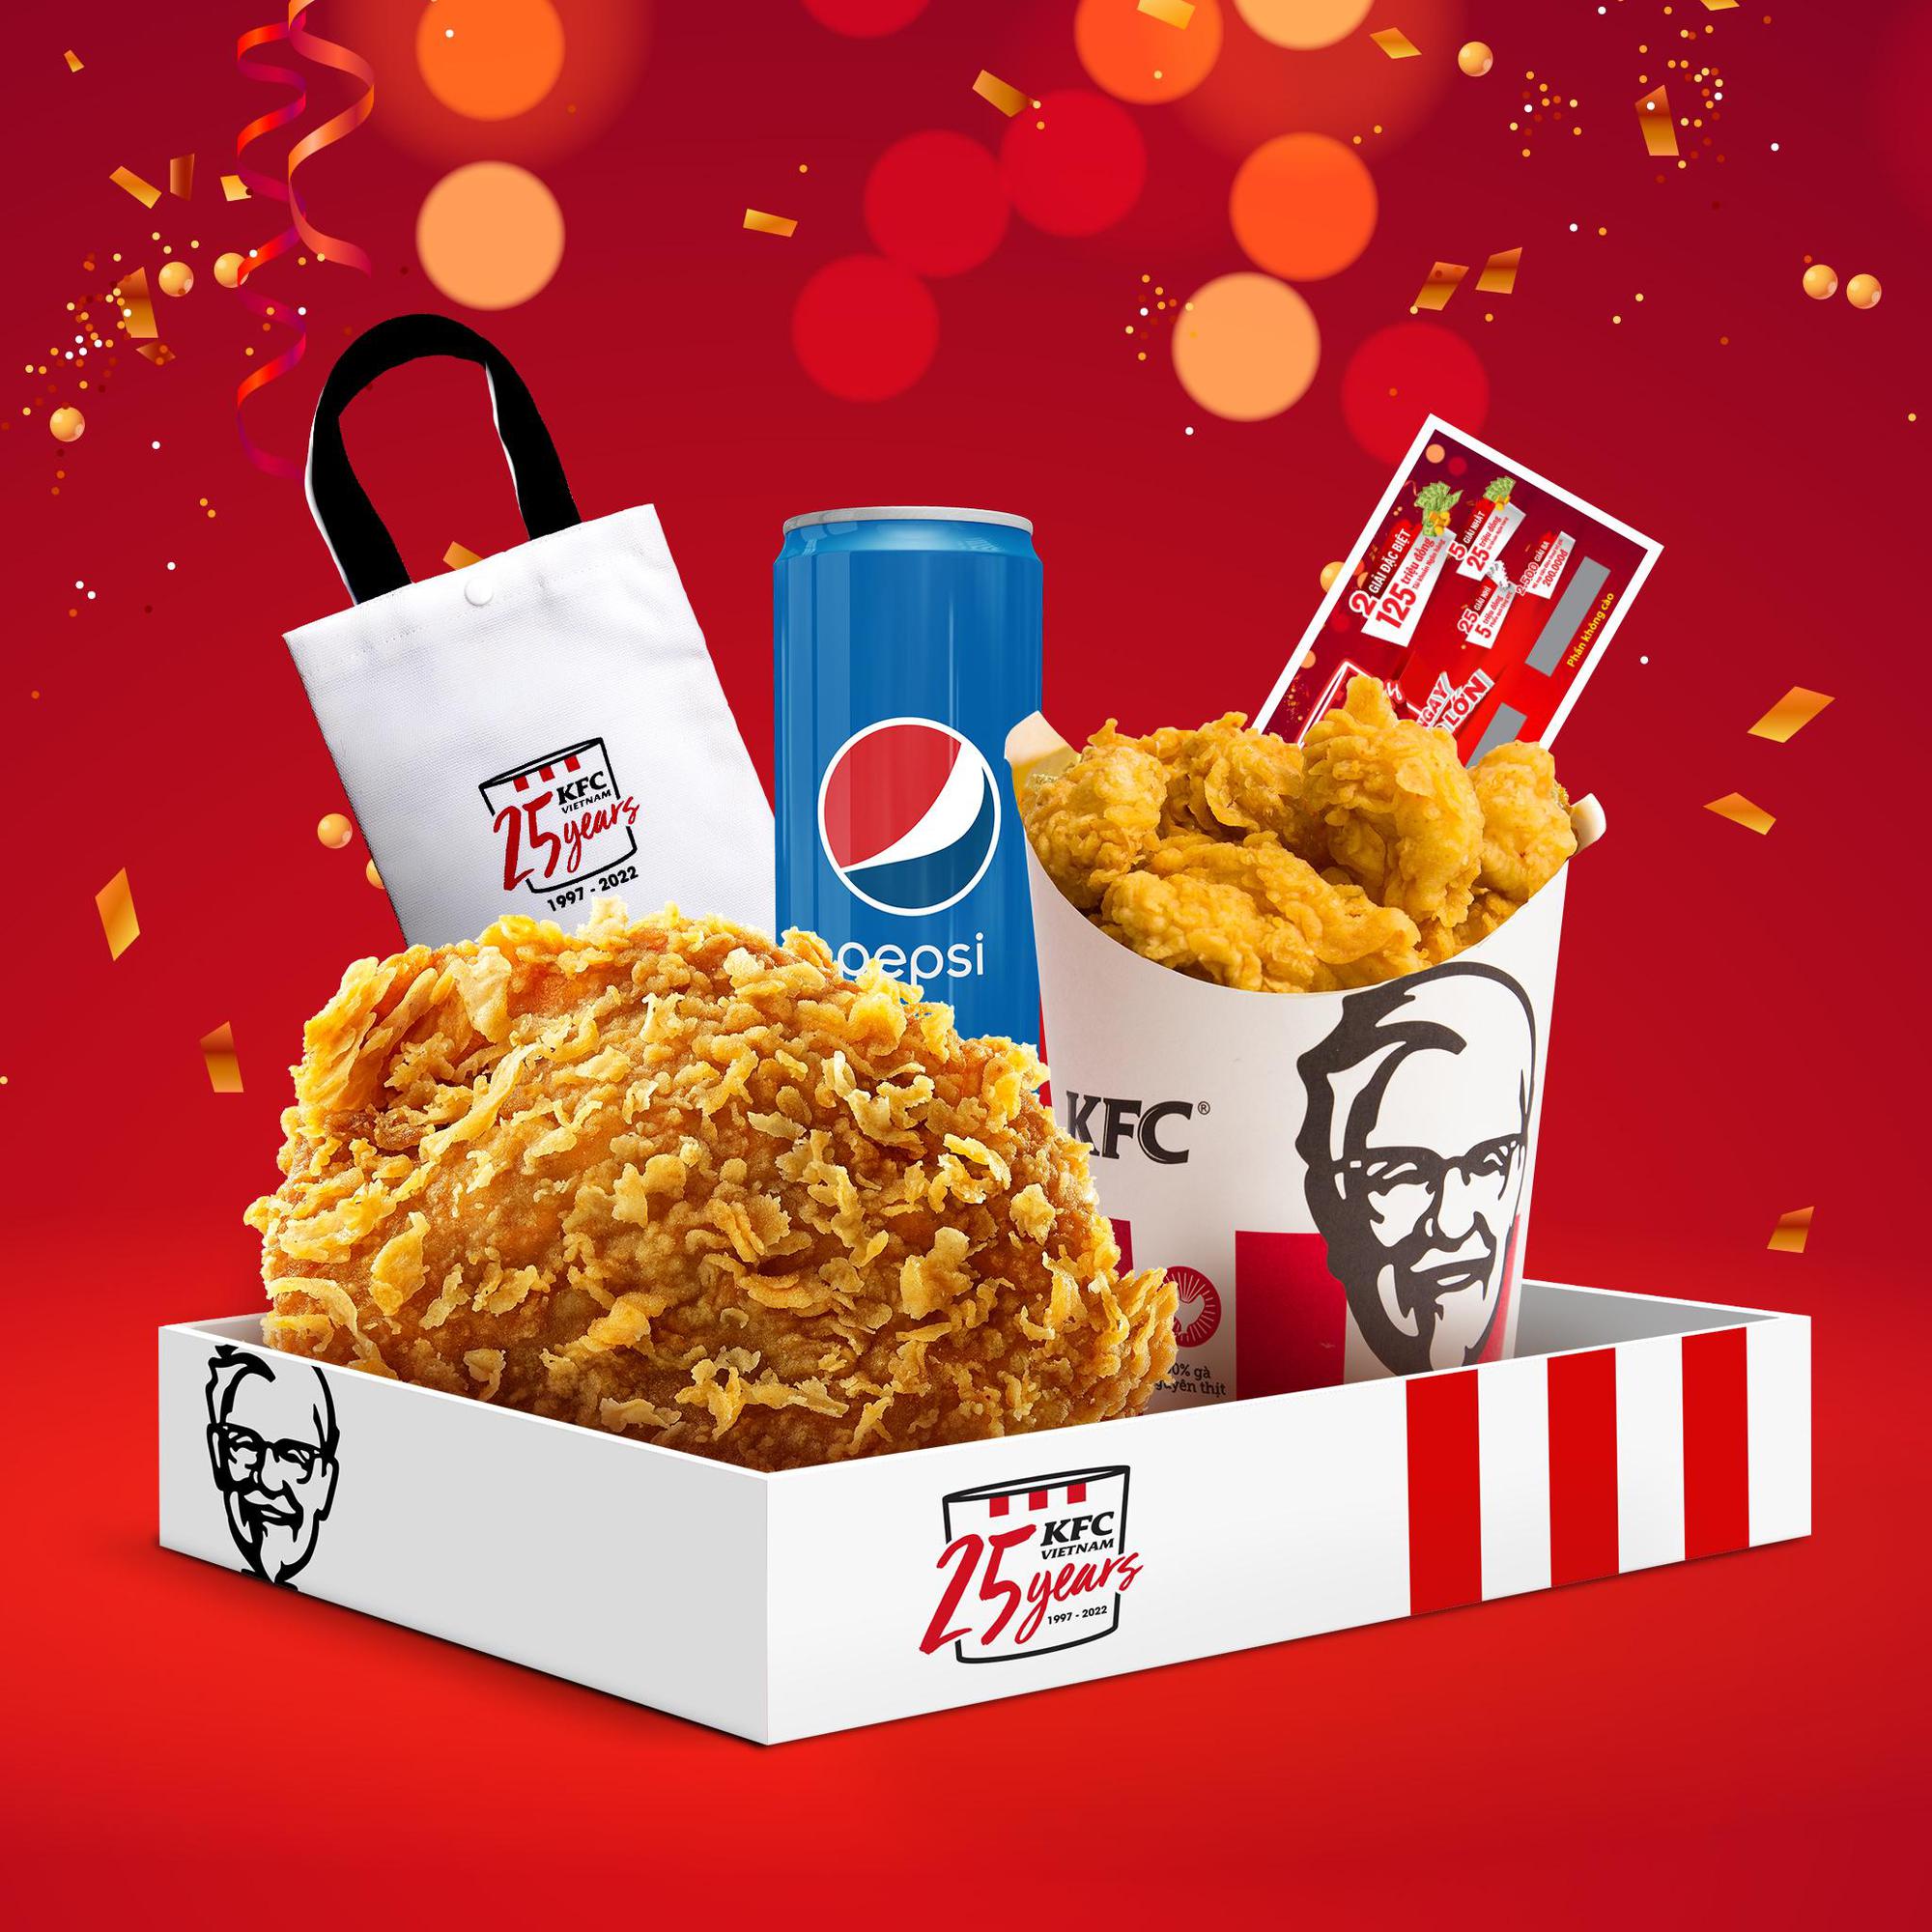 KFC kỷ niệm 25 năm có mặt tại Việt Nam với chuỗi ưu đãi hấp dẫn - Ảnh 2.